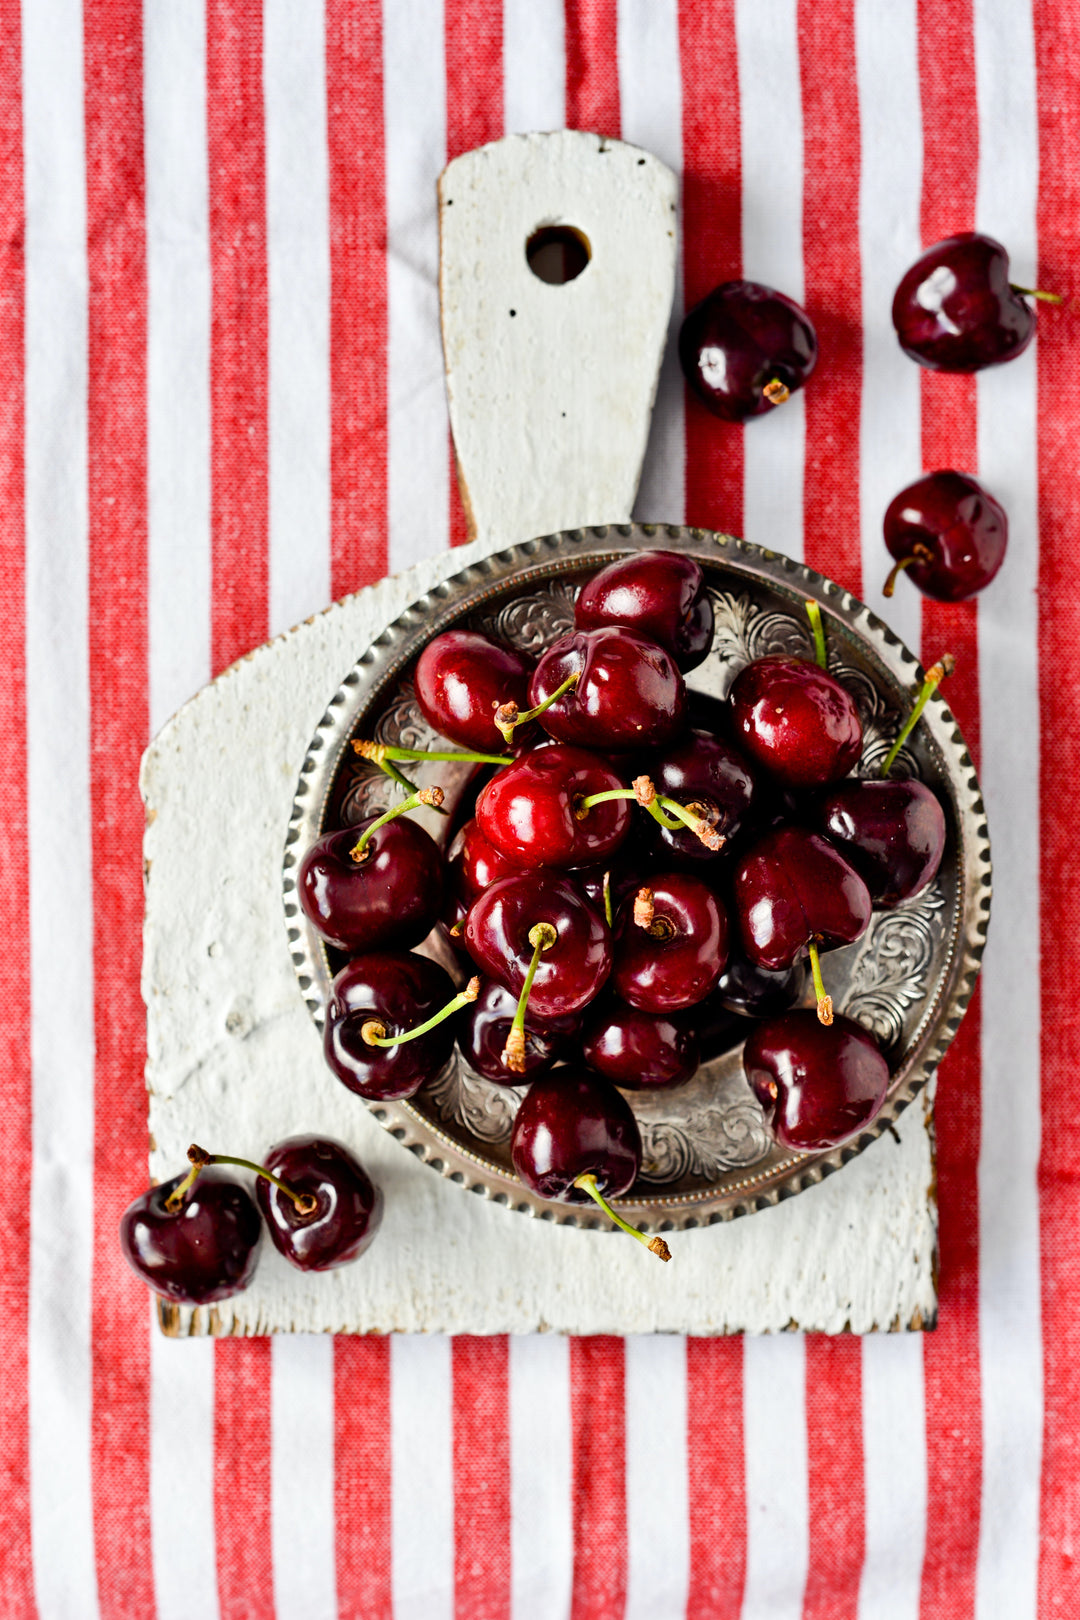 5 top health benefits of cherries